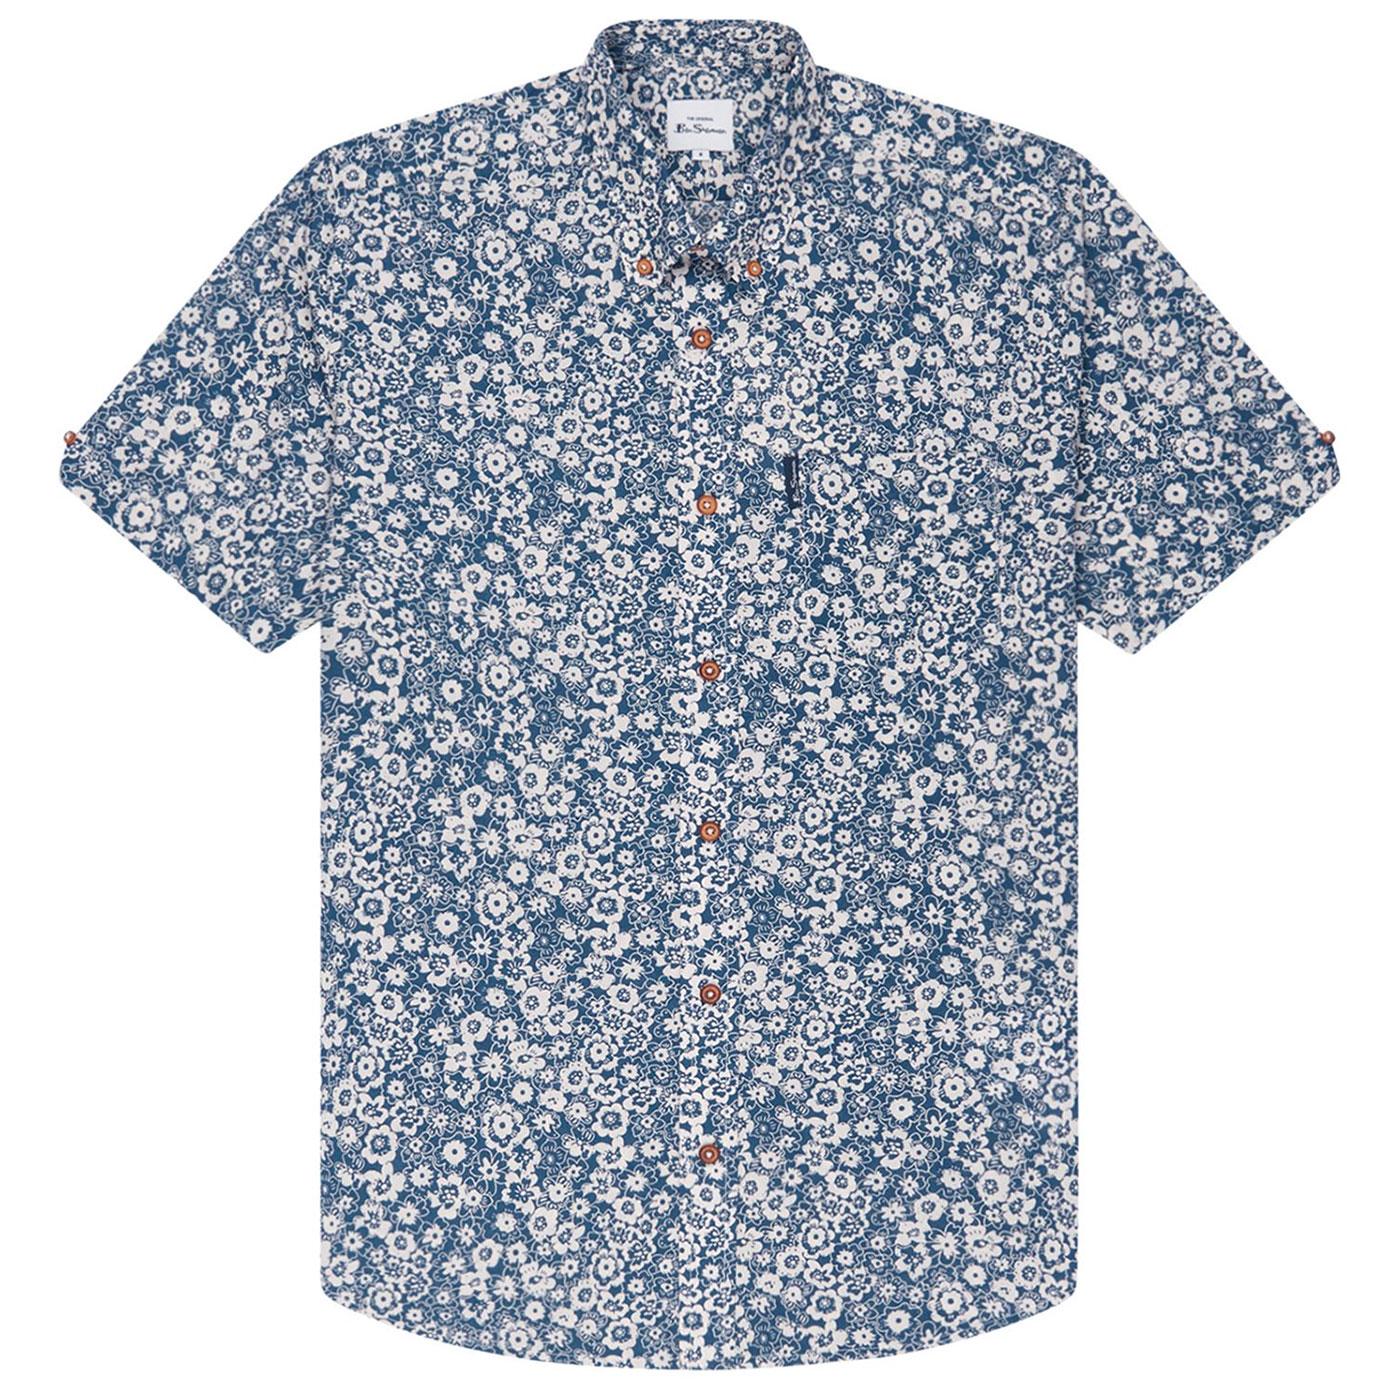 BEN SHERMAN Retro 70s Floral Summer Shirt - Indigo